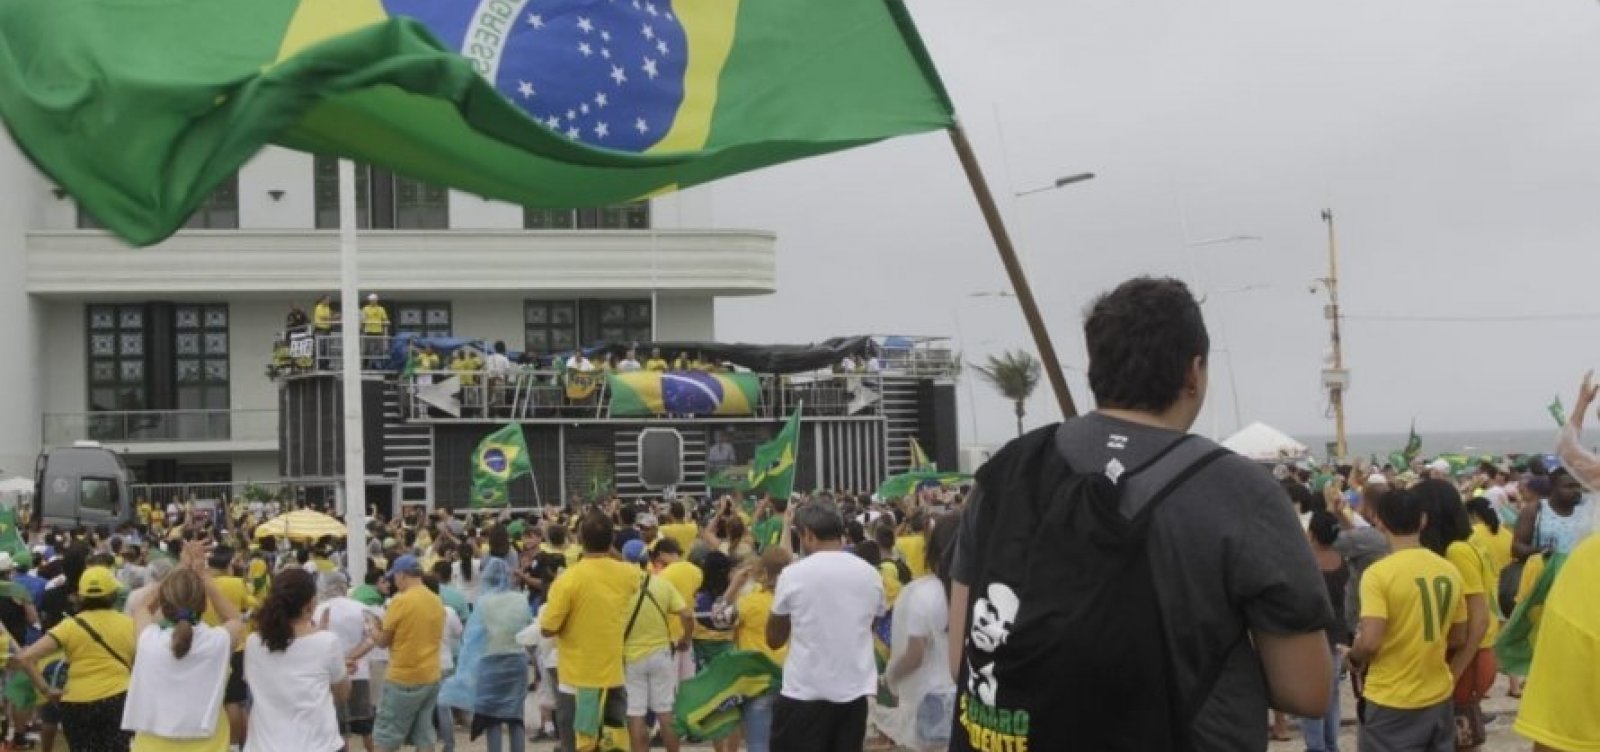 Líder do MBL na Bahia espera reunir até 2 mil pessoas no Farol da Barra